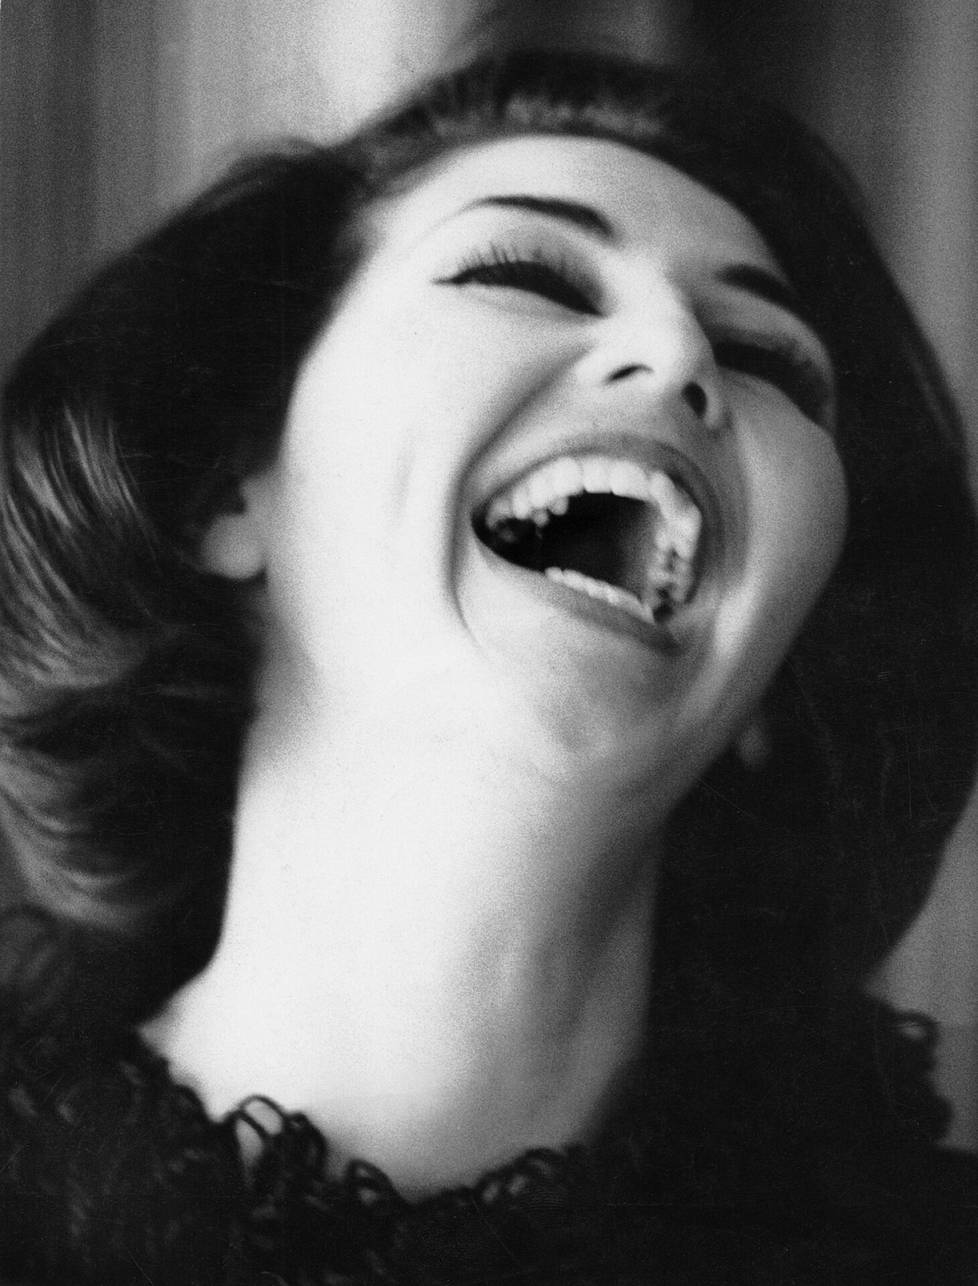 Lenita had a delicate laugh in 1963.